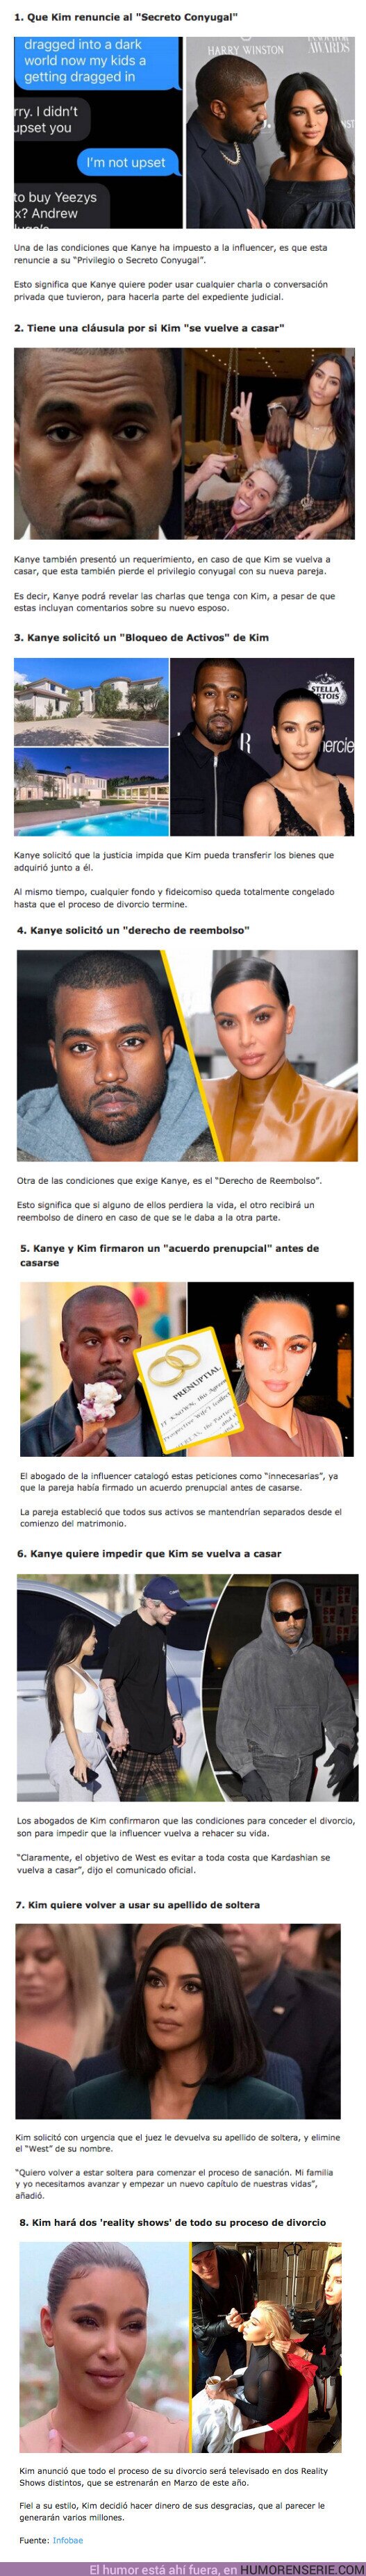 92491 - GALERÍA: Las 8 Condiciones de Kanye para poder divorciarse de Kim Kardashian